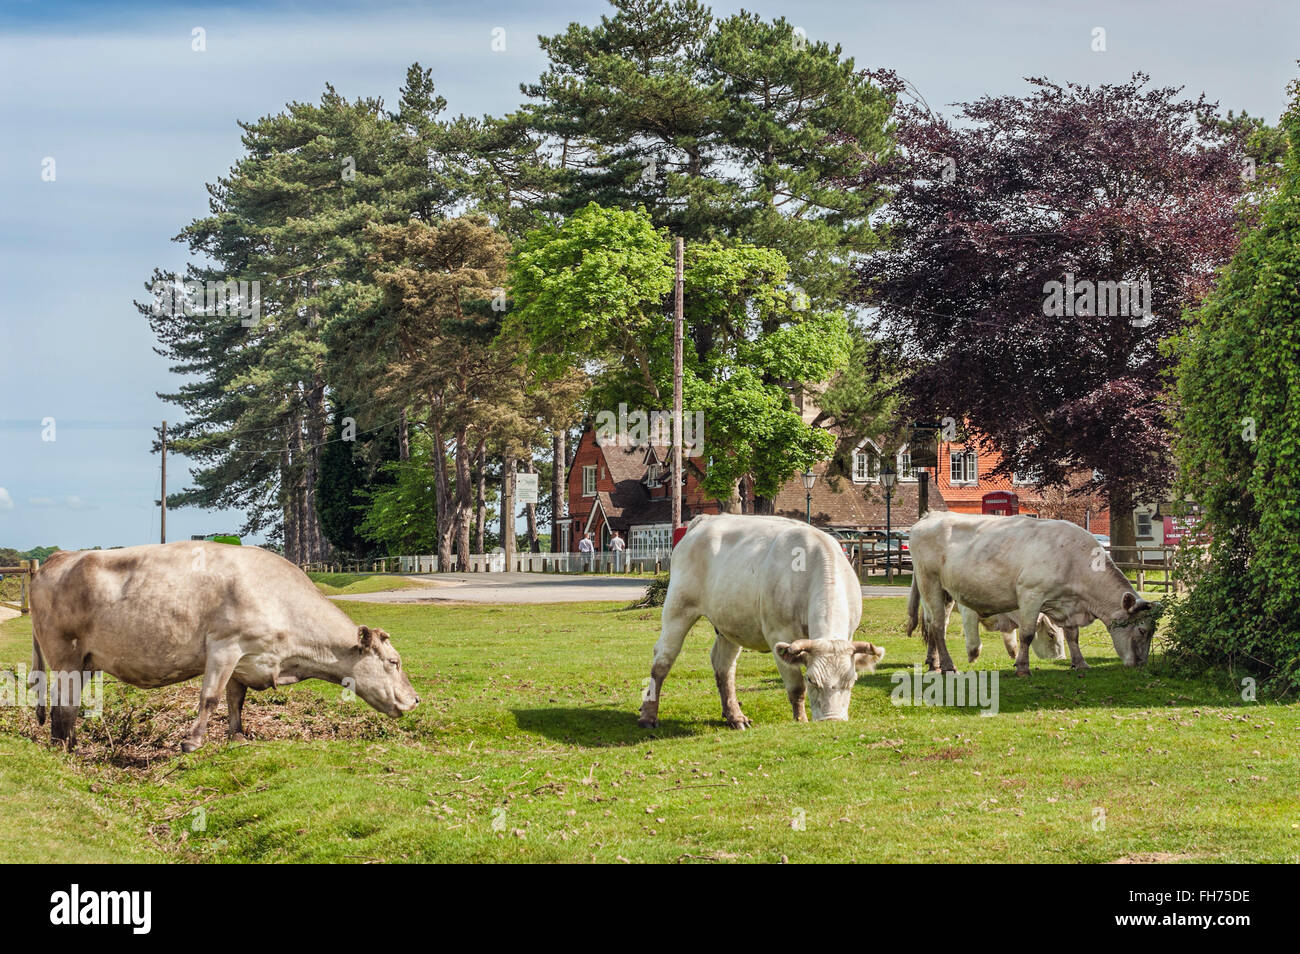 Un bétail à moitié sauvage au parc animalier New Forest Wildlife Park près de Lyndhurst, dans le sud-est de l'Angleterre. Banque D'Images